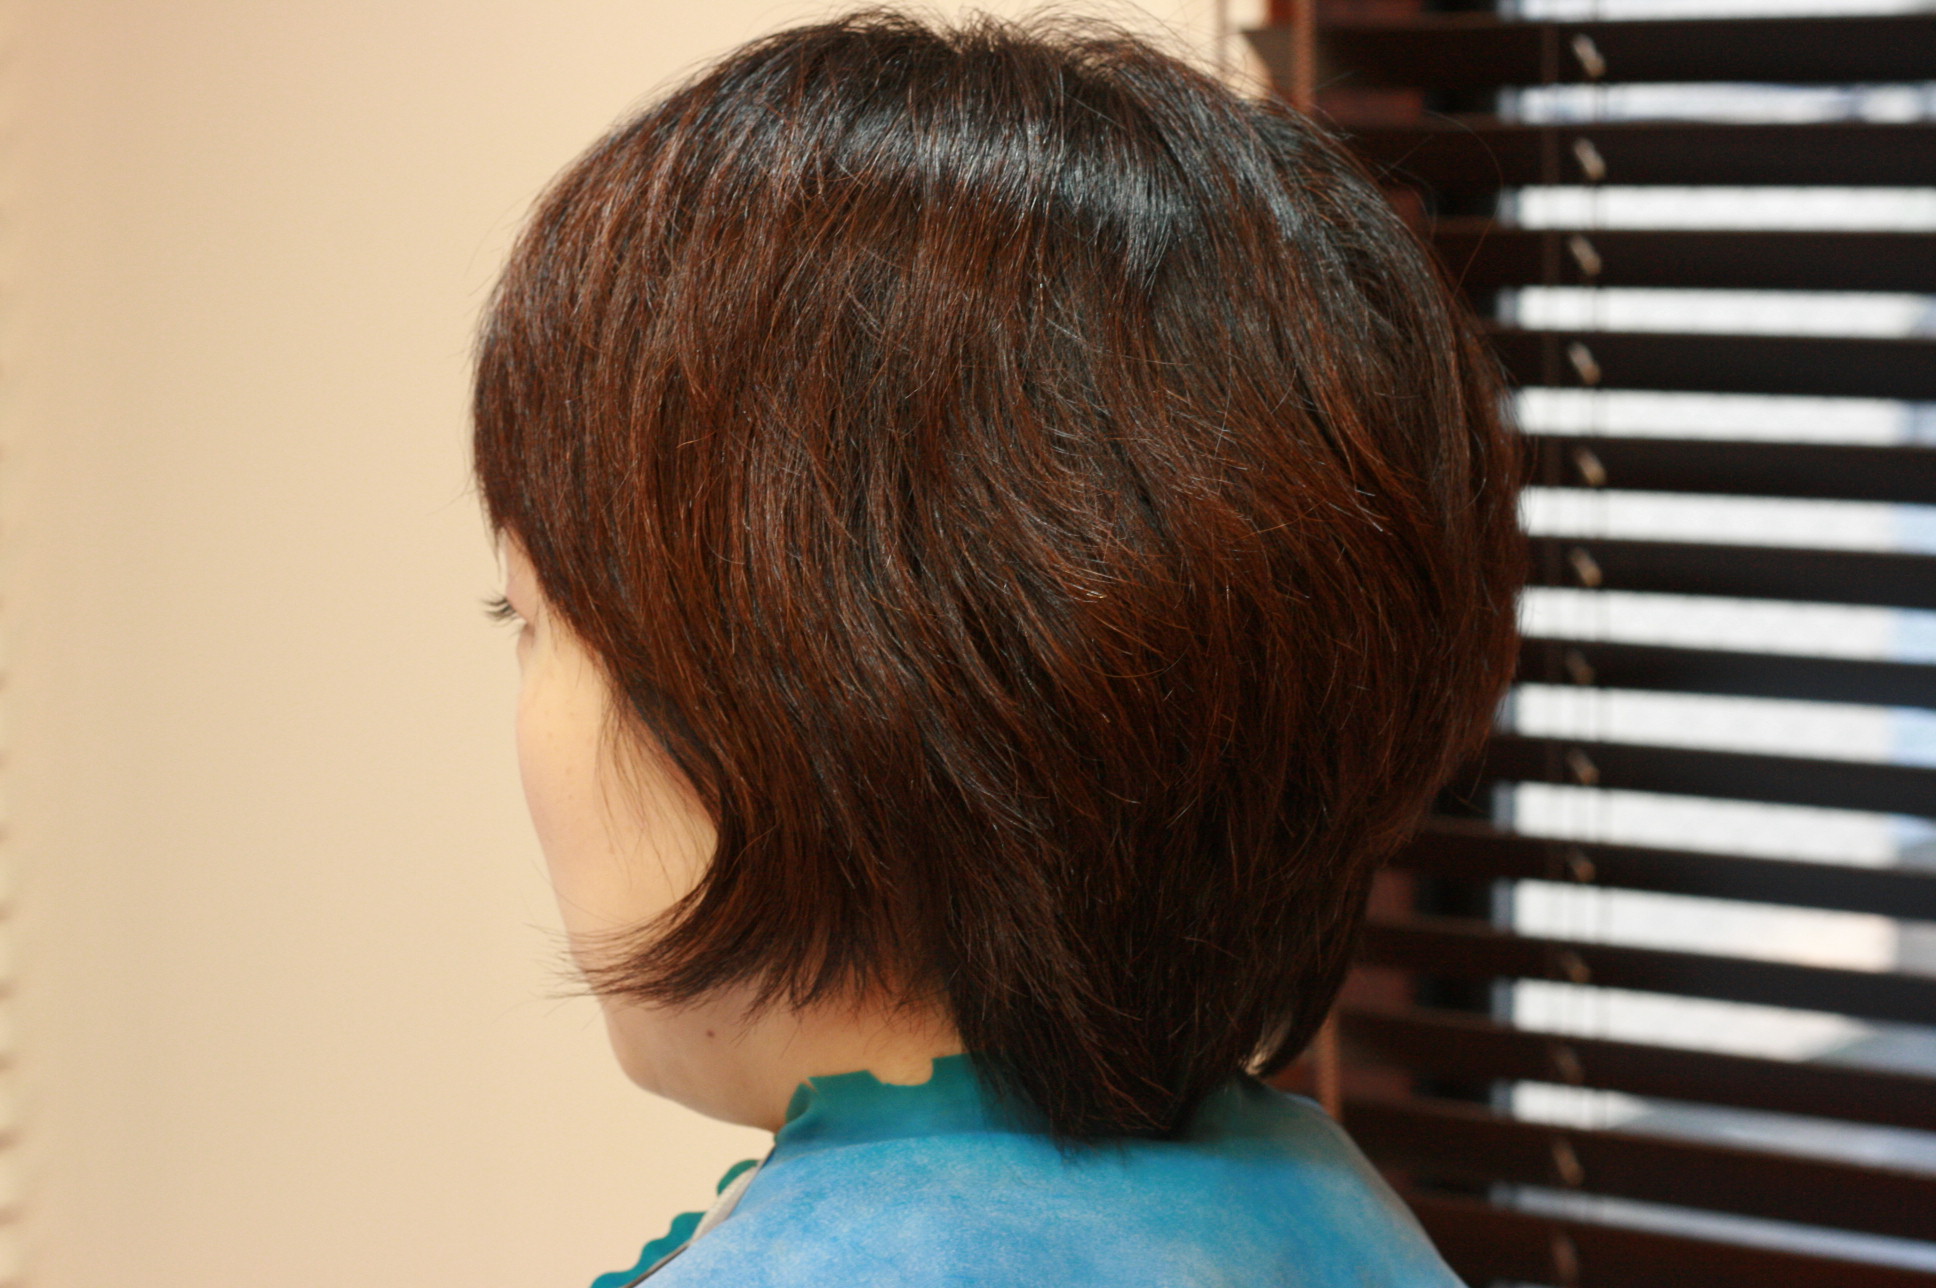 有働由美子アナウンサーの髪型 ショートヘア編 の巻